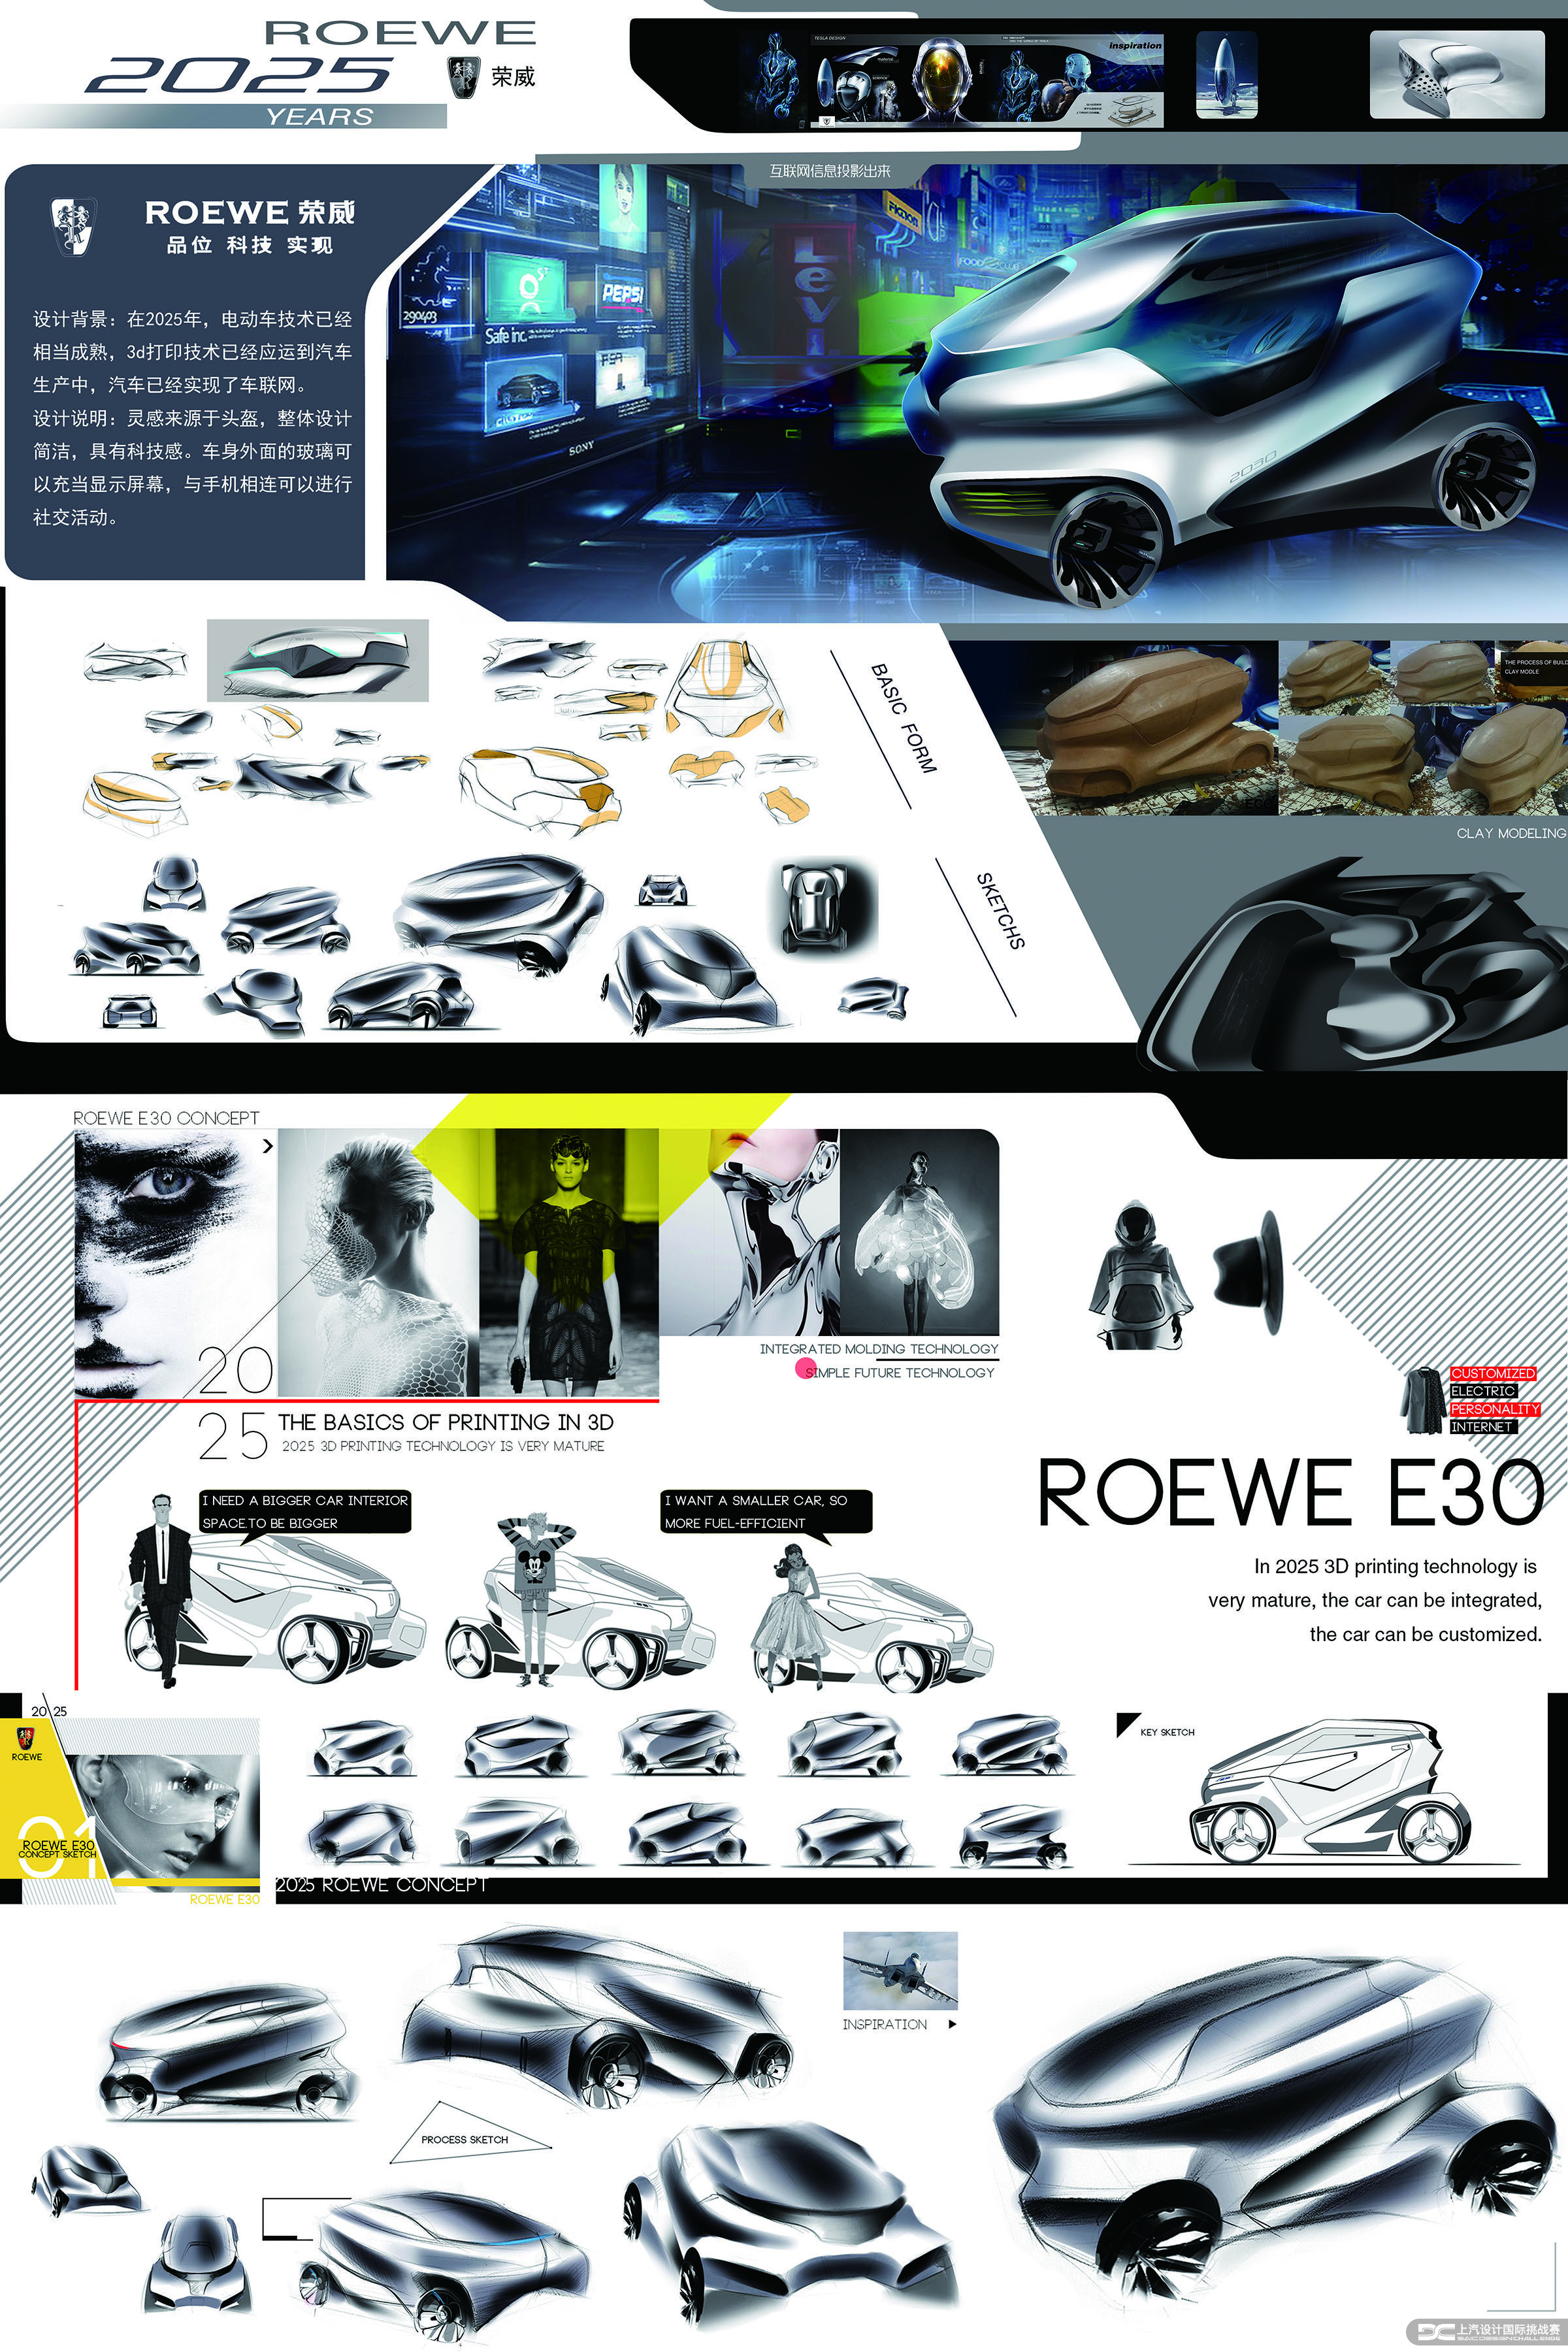 甘力涵，ROEWE E30，大赛，汽车设计，荣威MG，上汽，